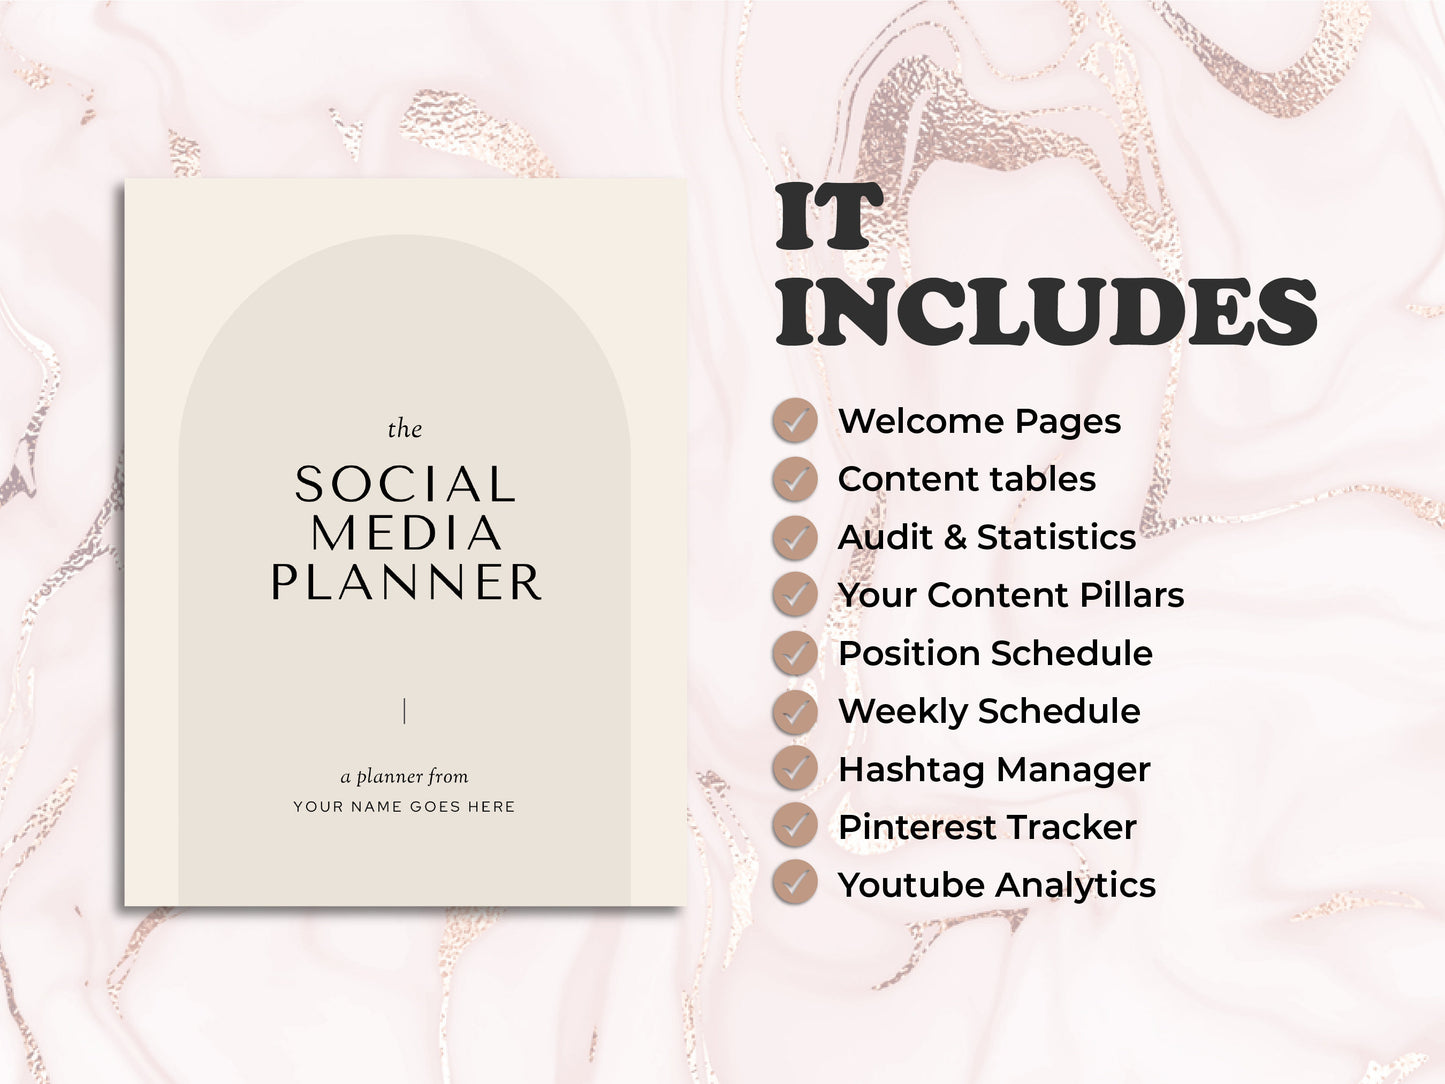 Social Media Planner | Canva Social Media Planner | Social Media Kit | Social Media Content Calendar